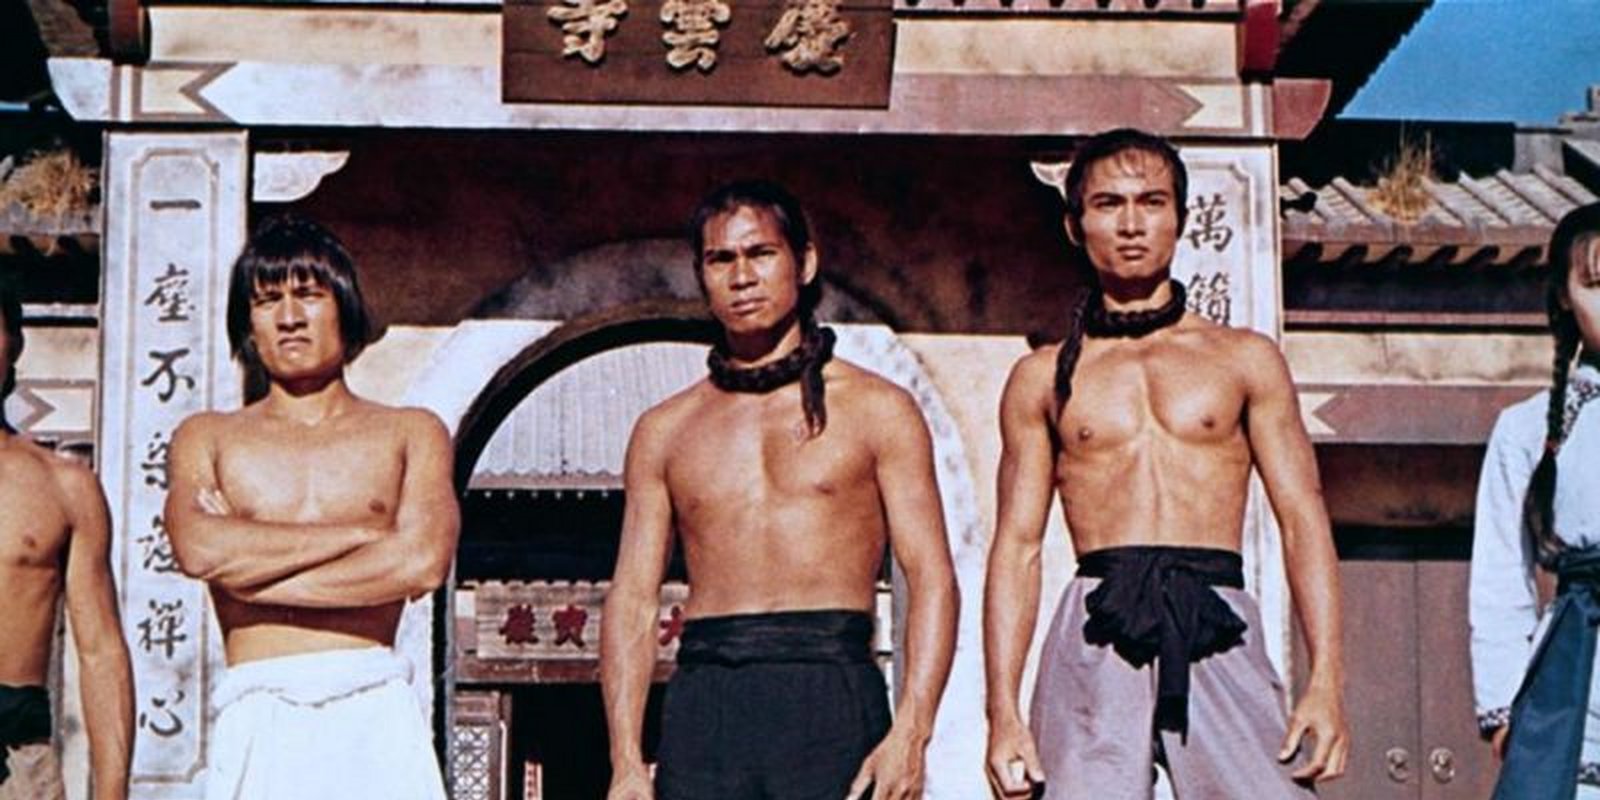 Die Todesfäuste der Shaolin - Die tödlichen Fäuste der Shaolin